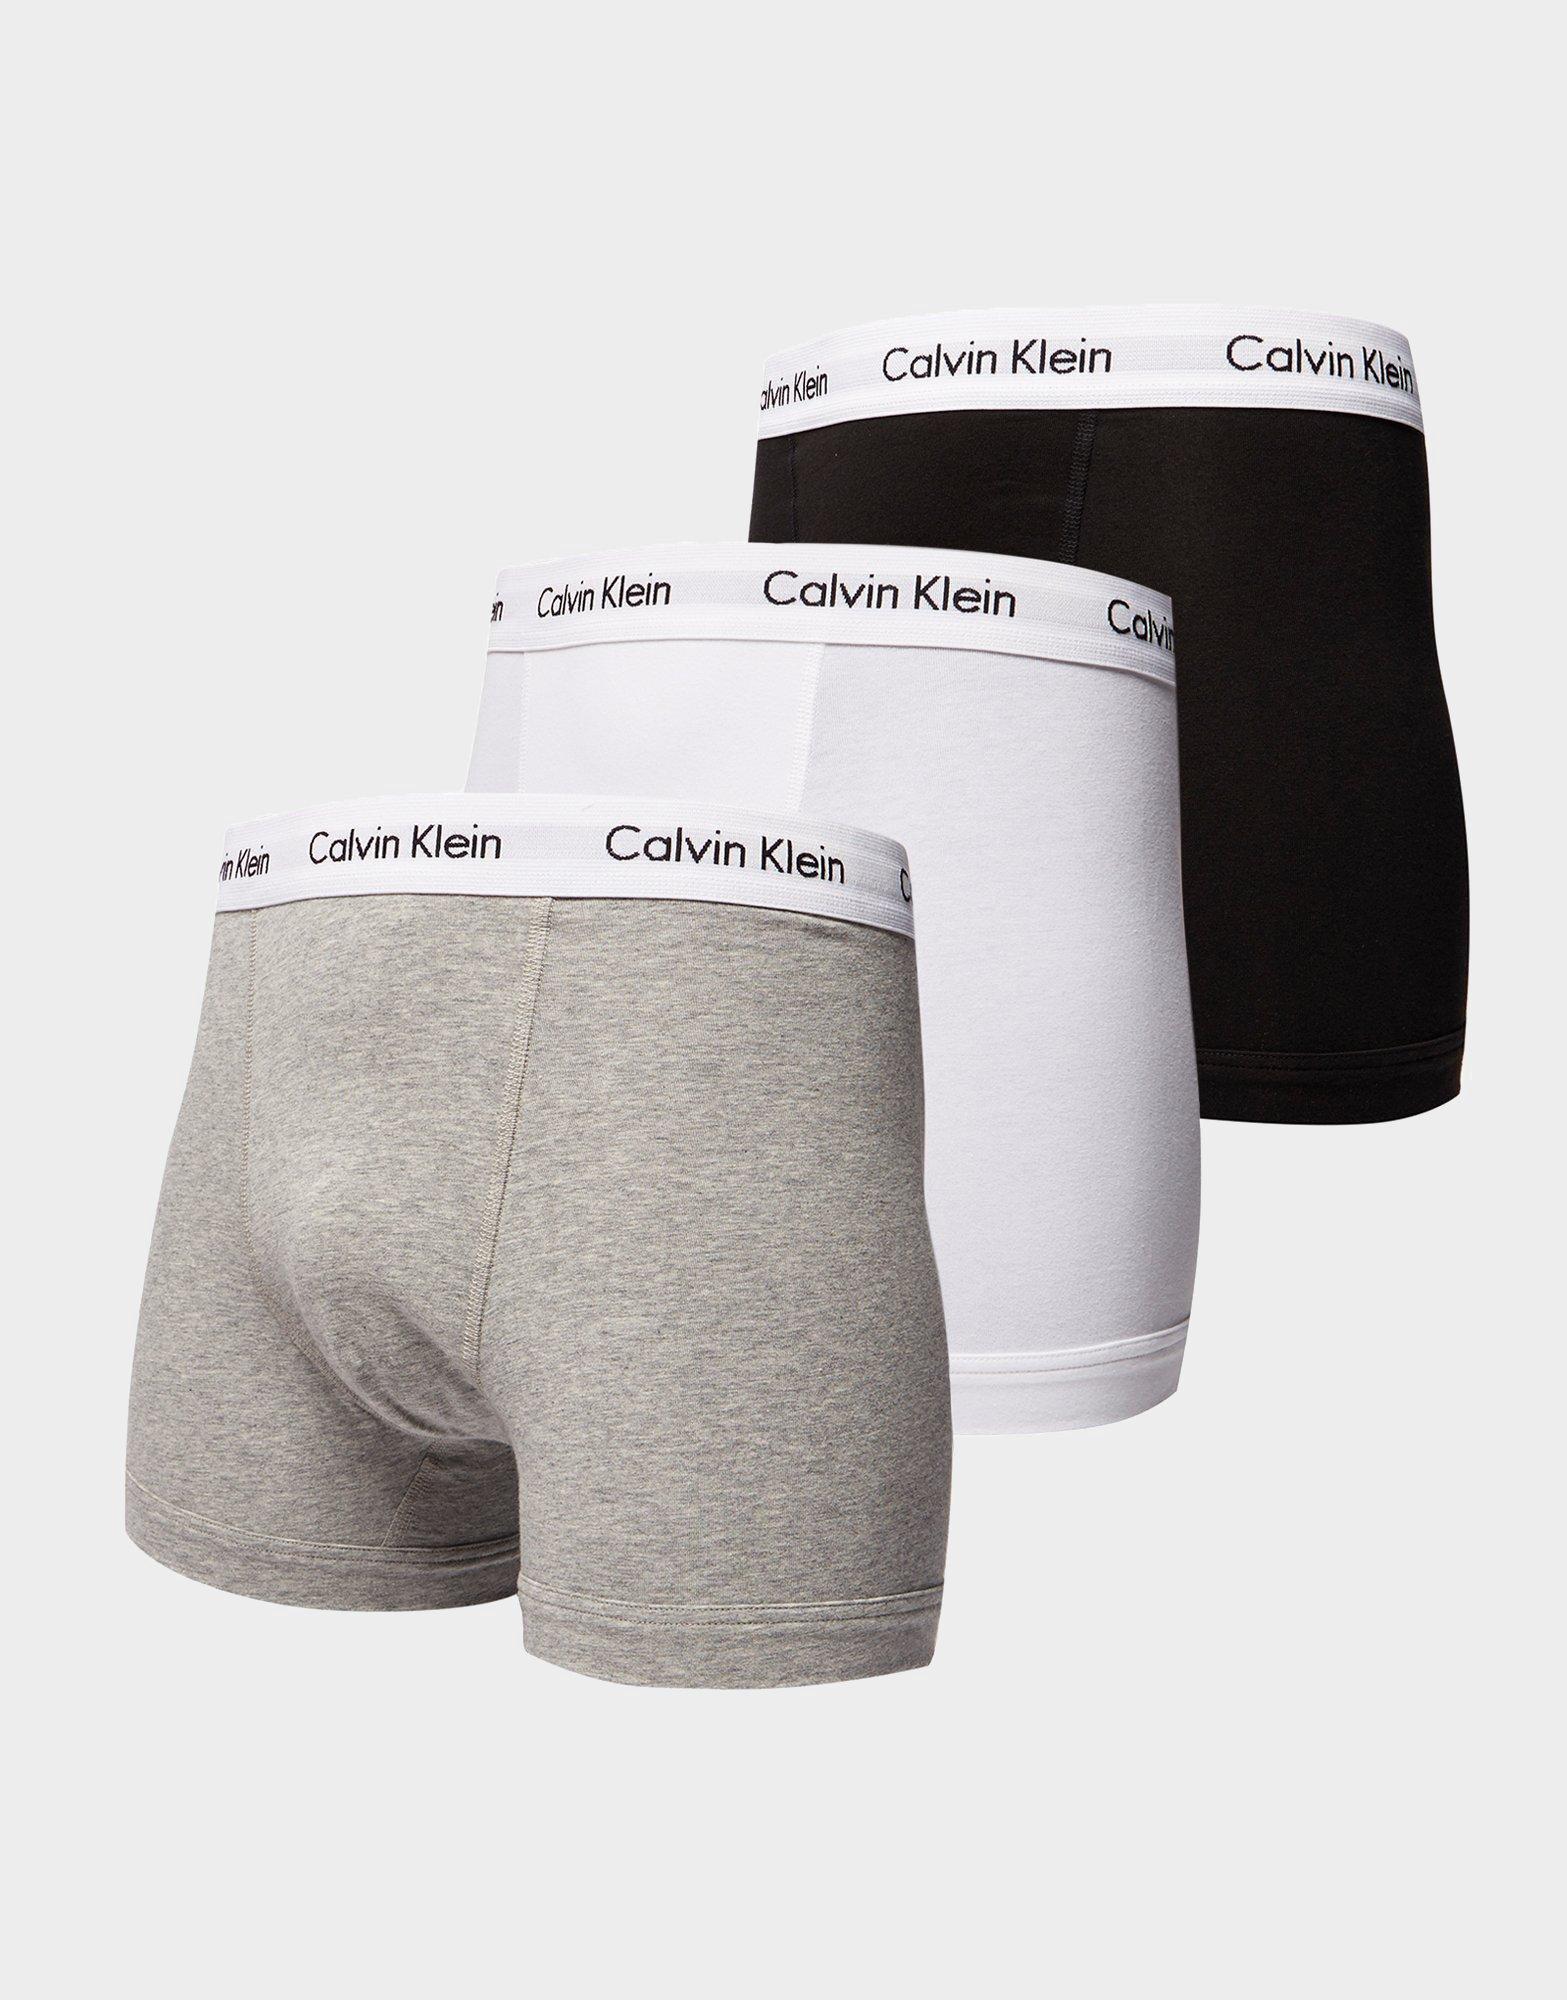 calvin klein cheap boxers